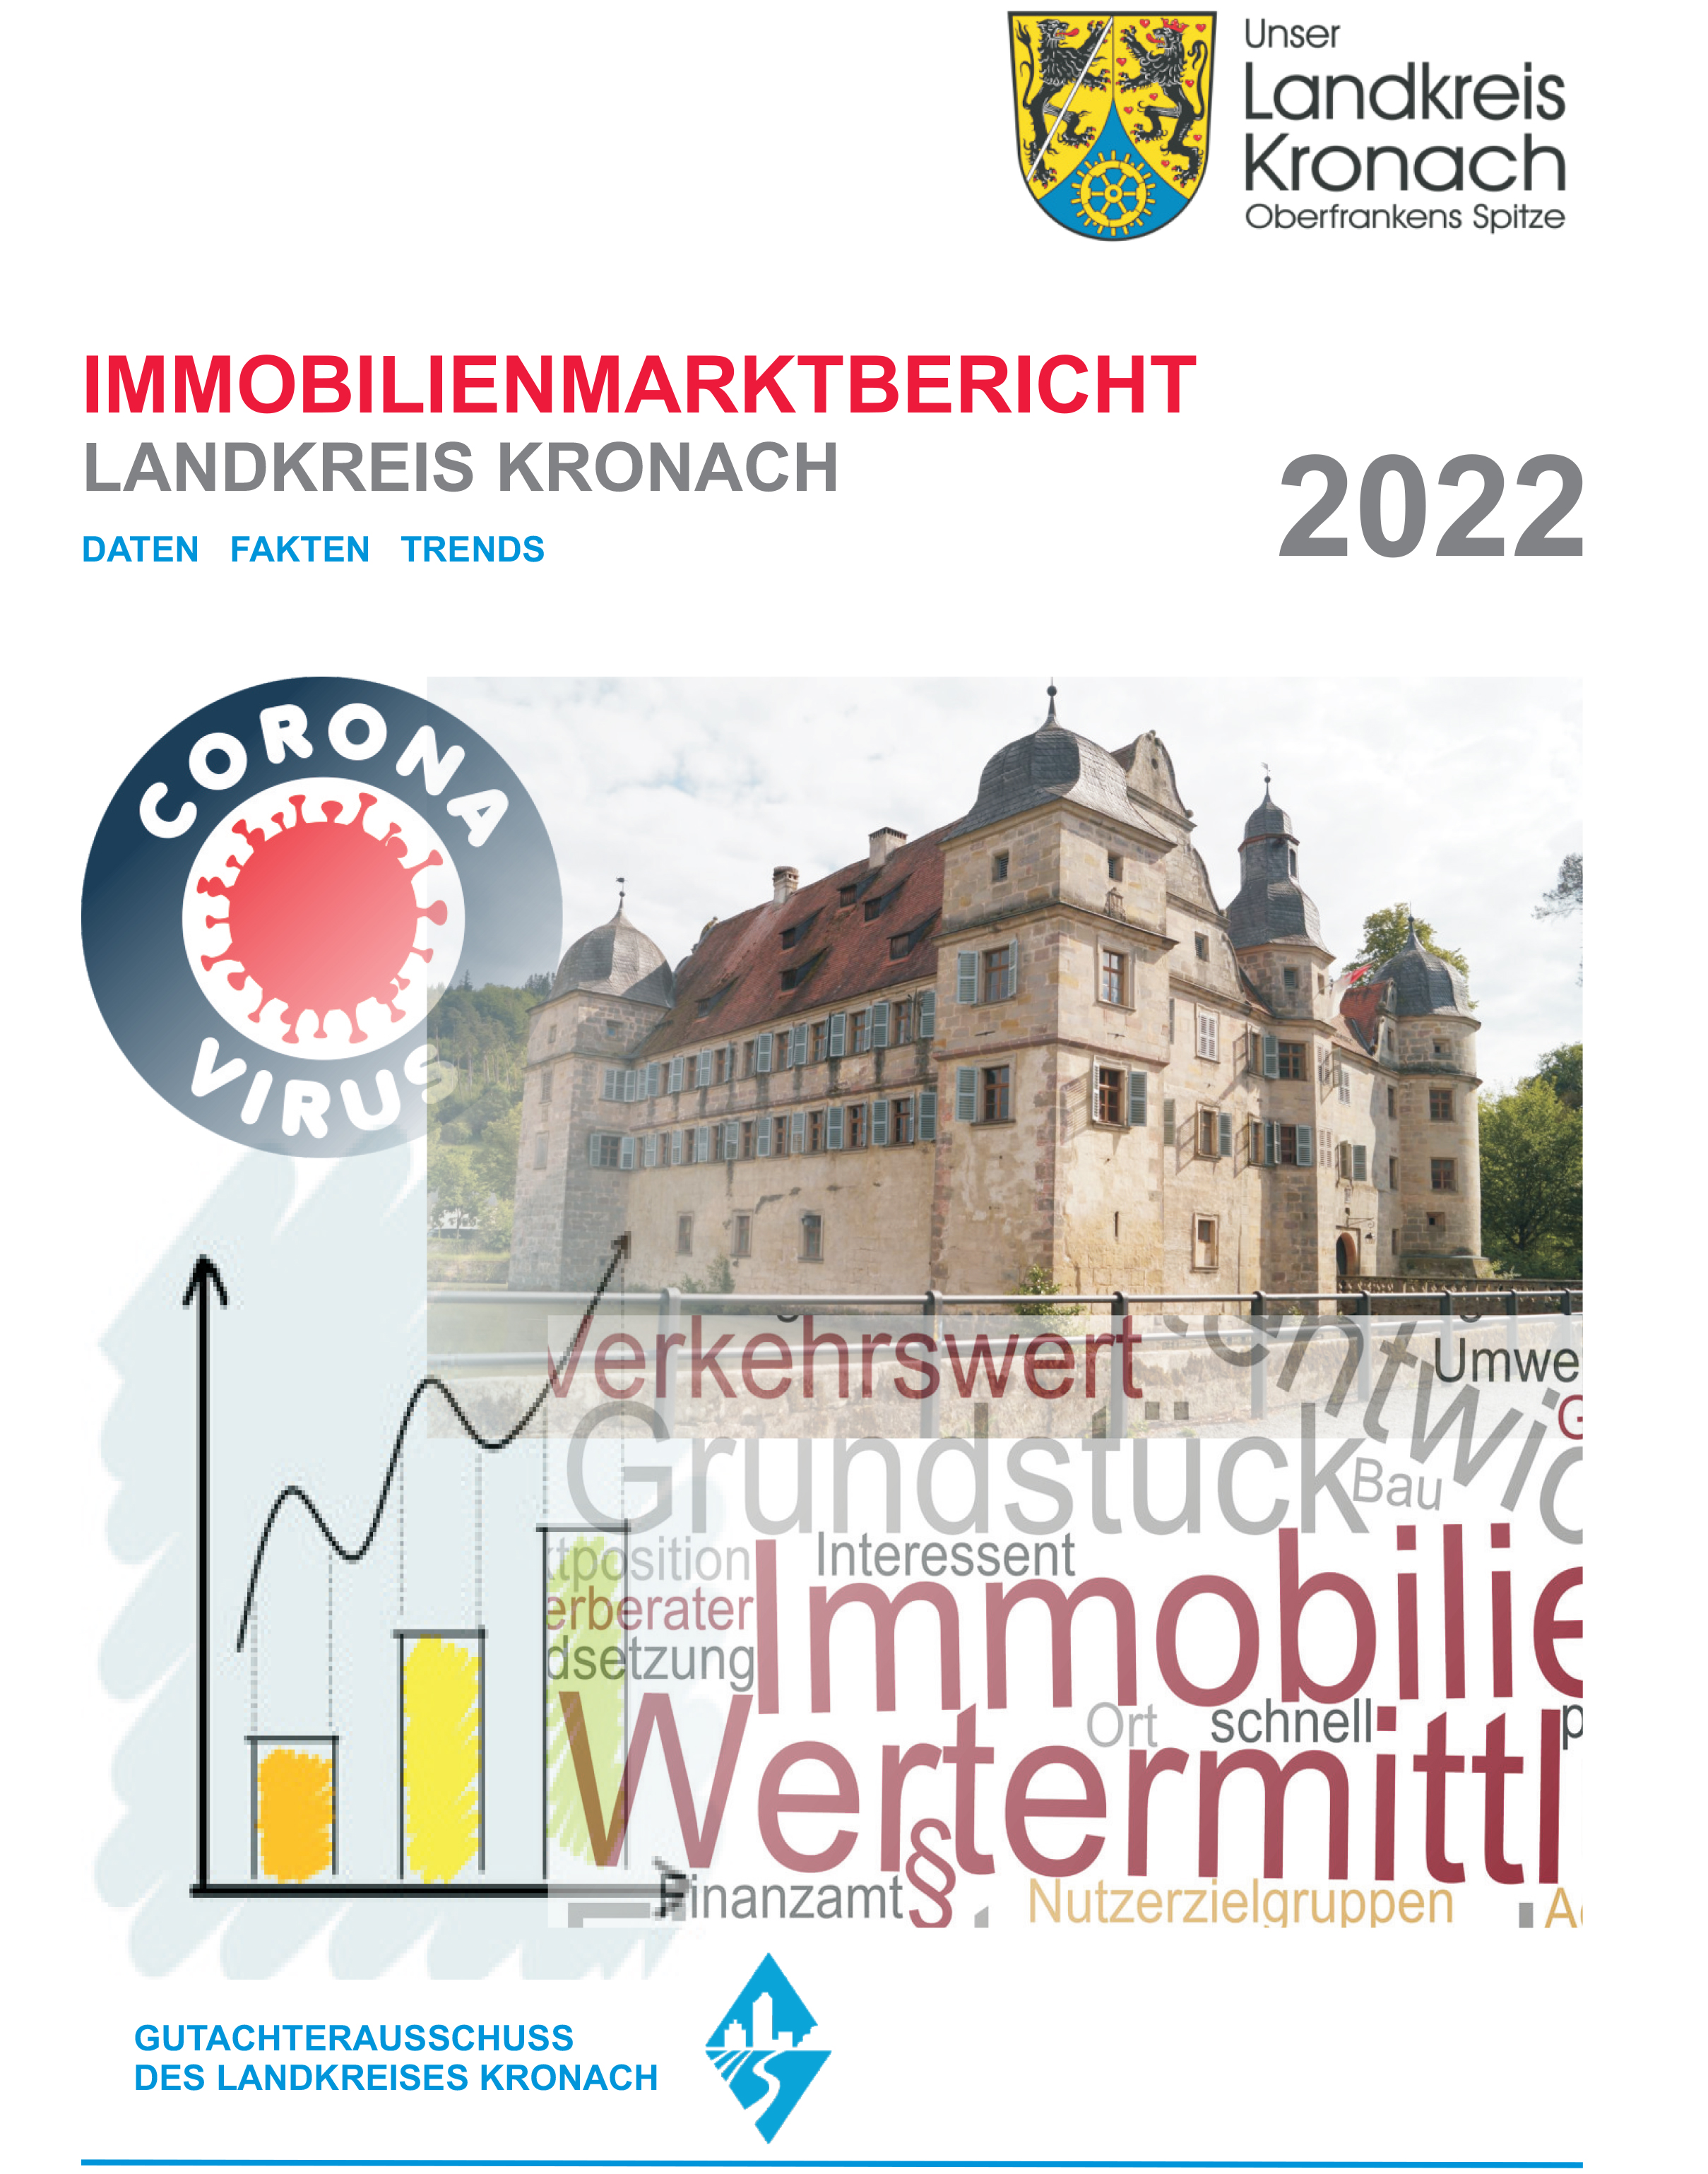 Immobilienmarktbericht 2022 für Landkreis Kronach jetzt erhältlich